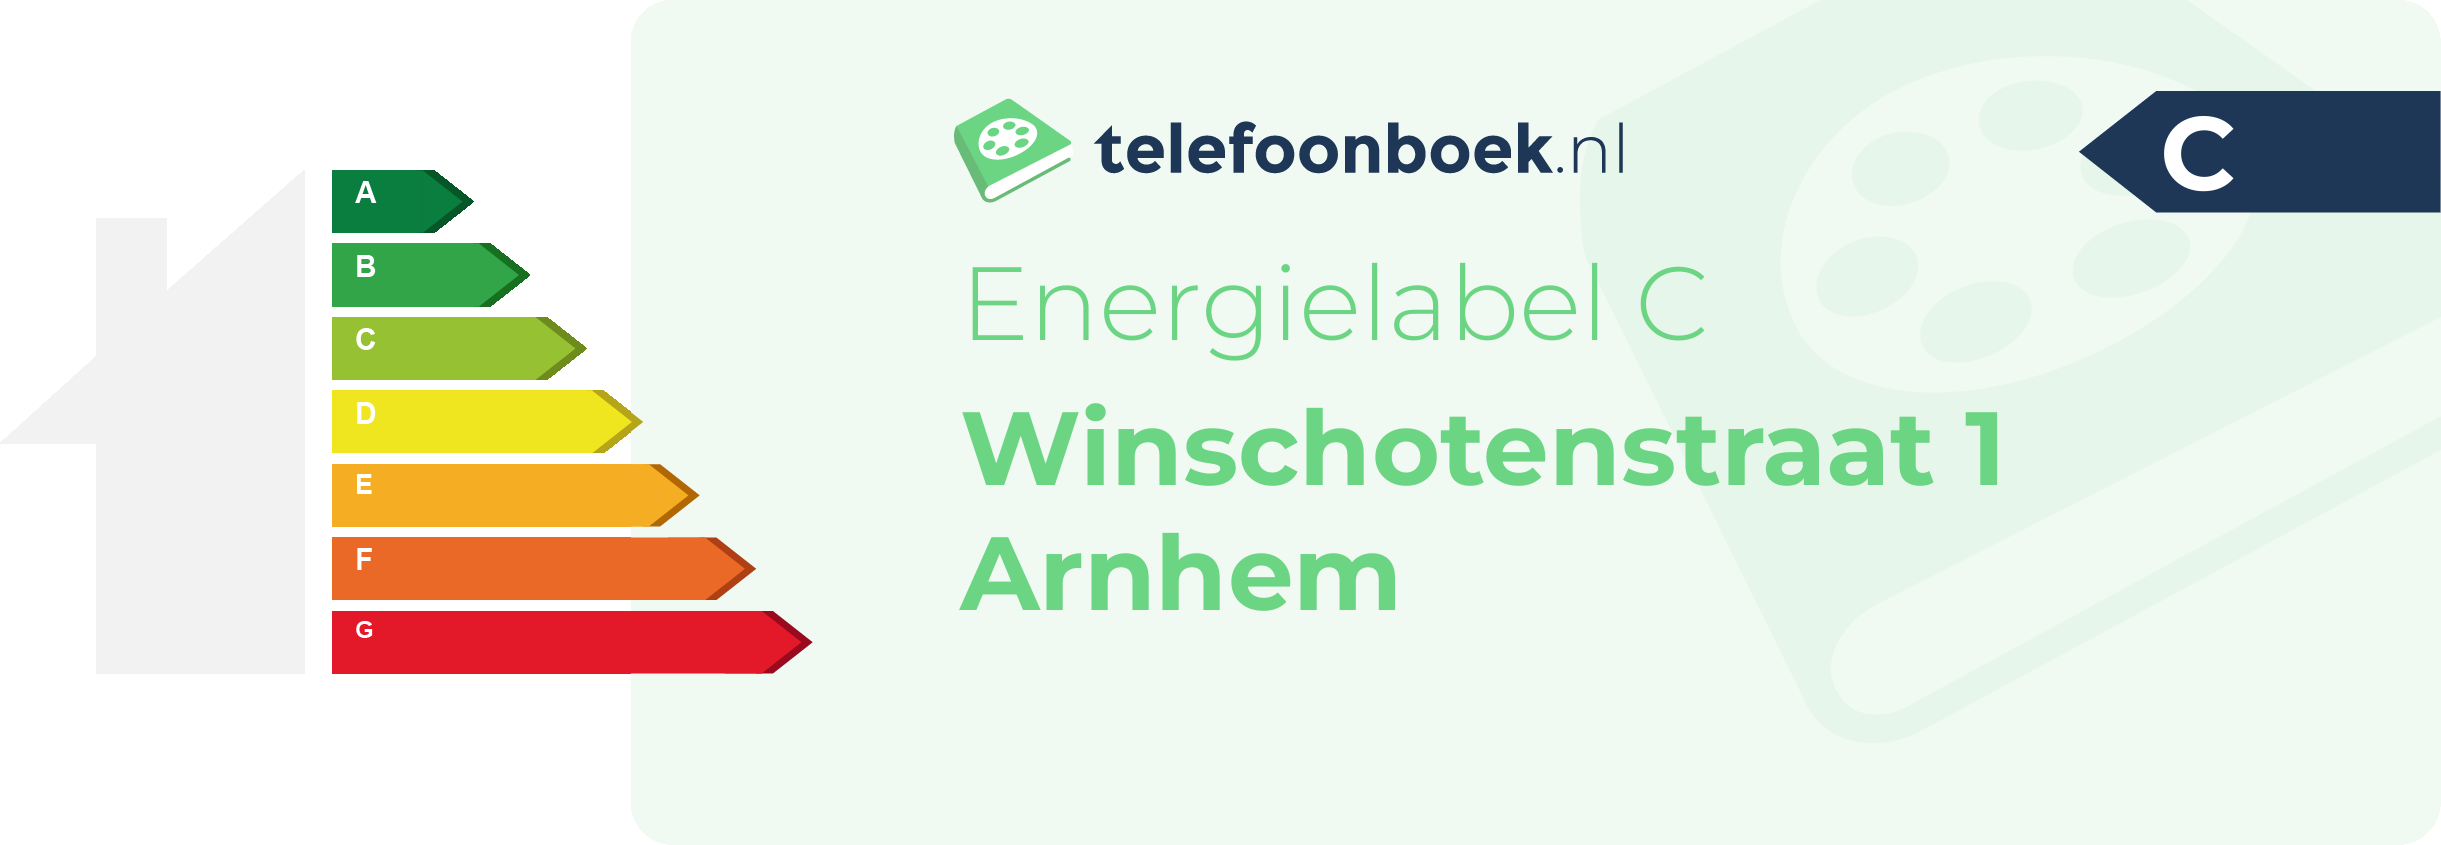 Energielabel Winschotenstraat 1 Arnhem